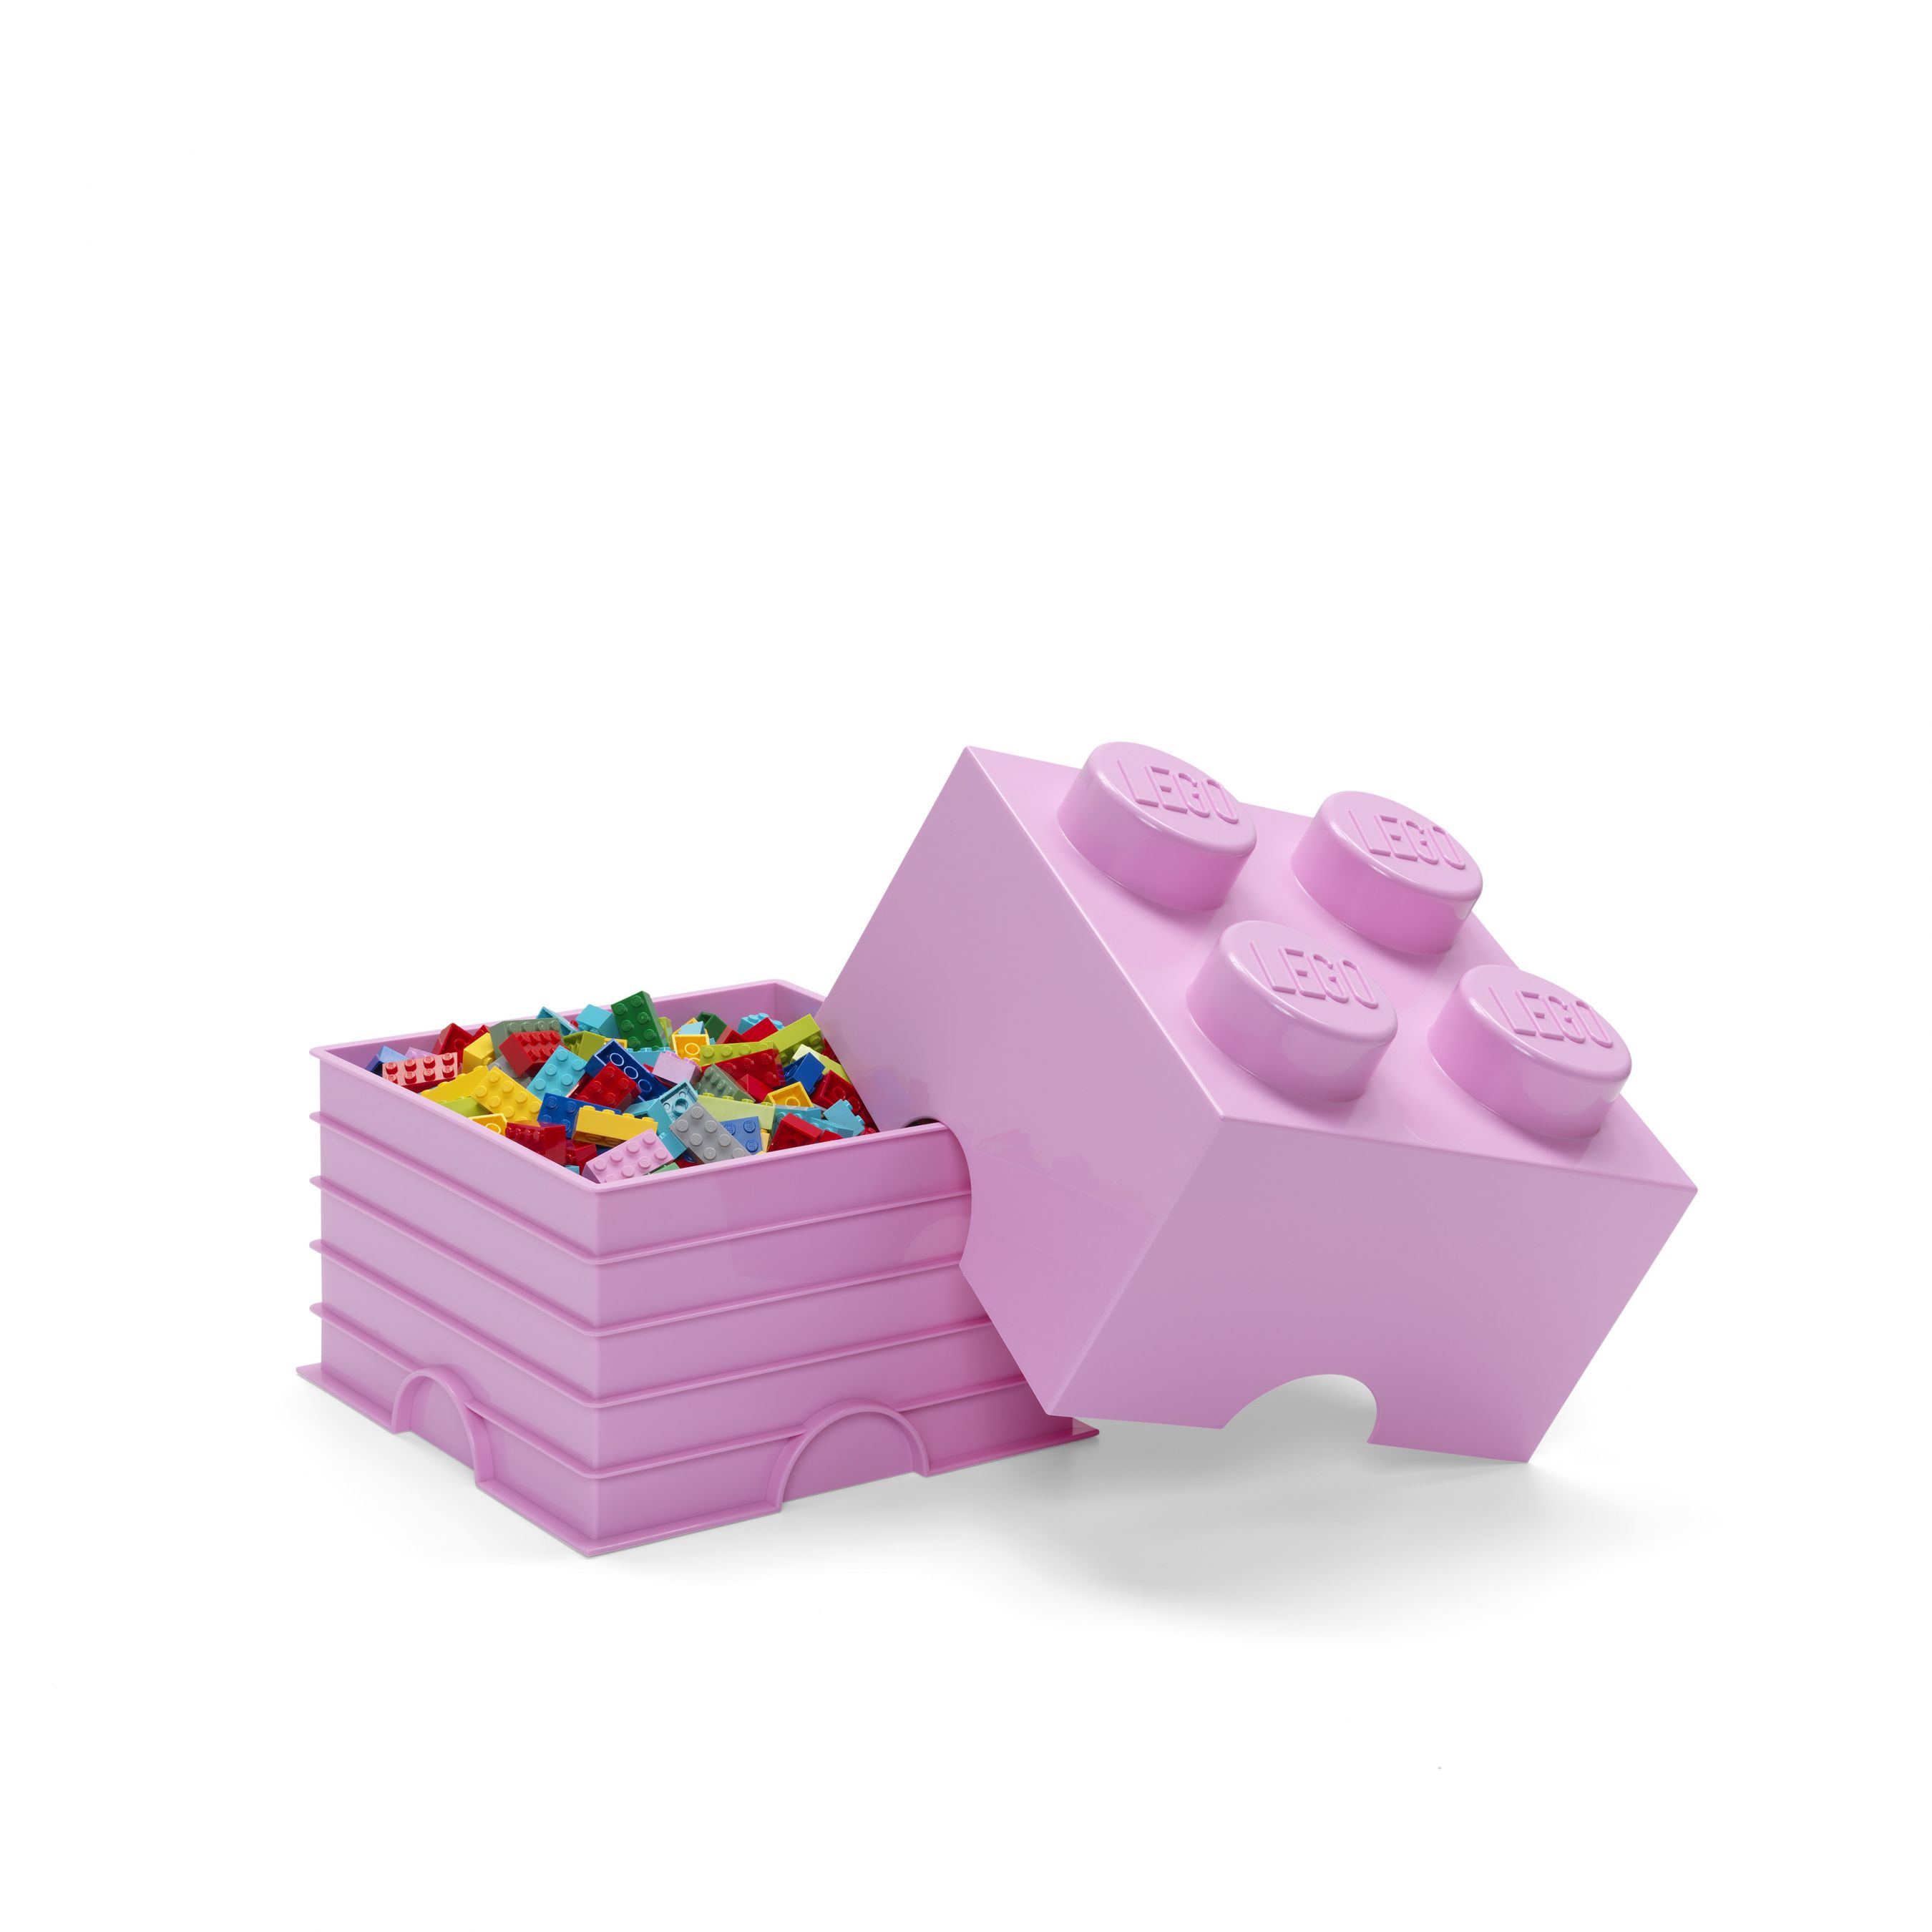 LEGO Gear 5007267 Aufbewahrungsstein mit 4 Noppen in Hellviolett LEGO_5007267_alt2.jpg